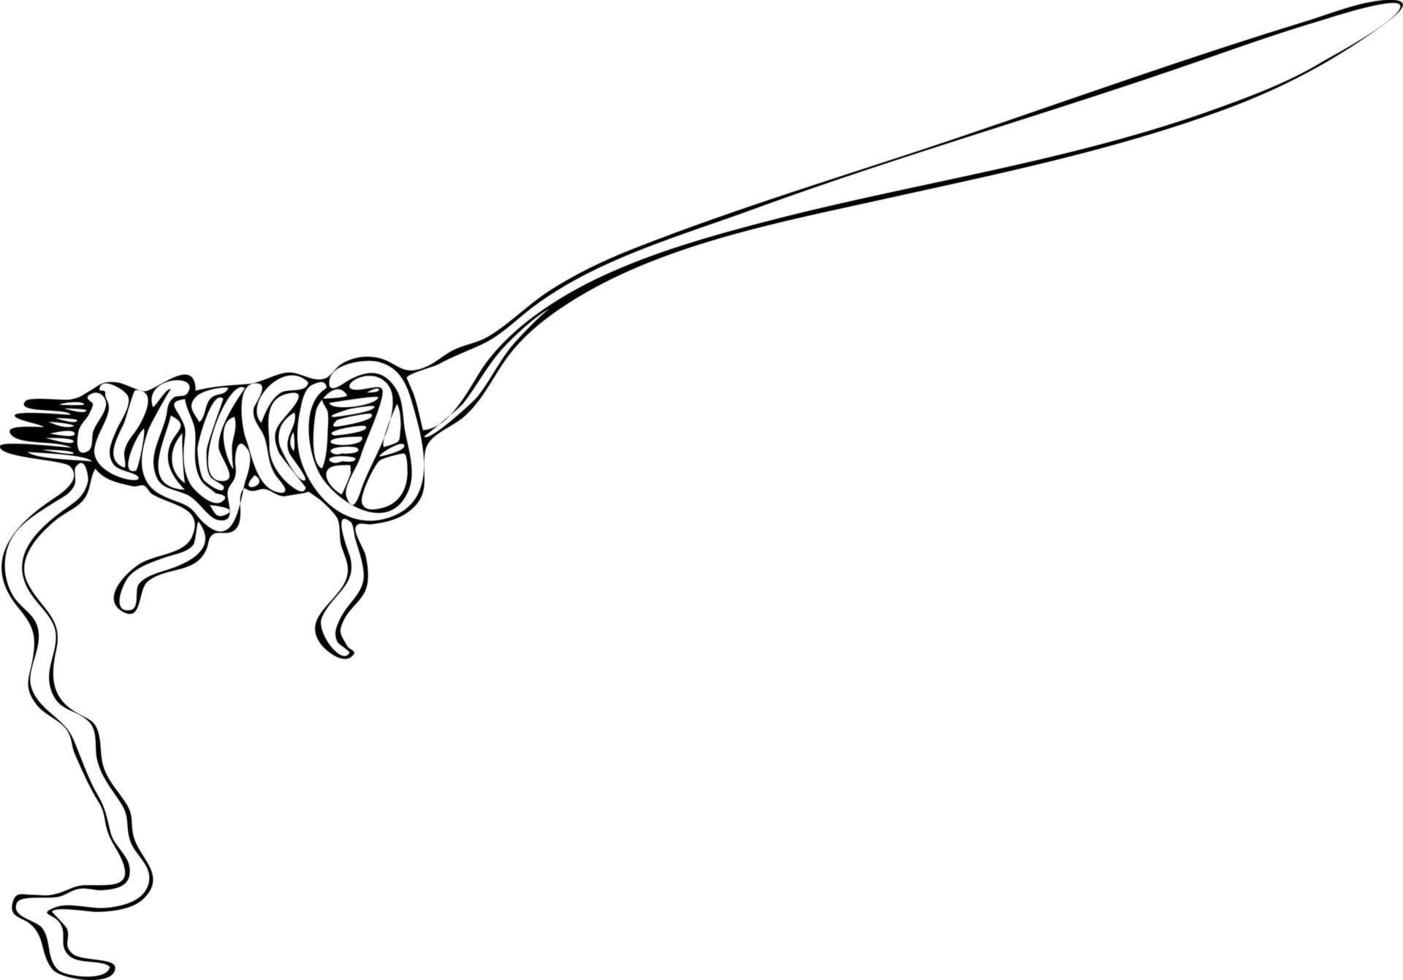 spaghetti di pasta su una forchetta. schizzo di disegno in bianco e nero a mano. vettore